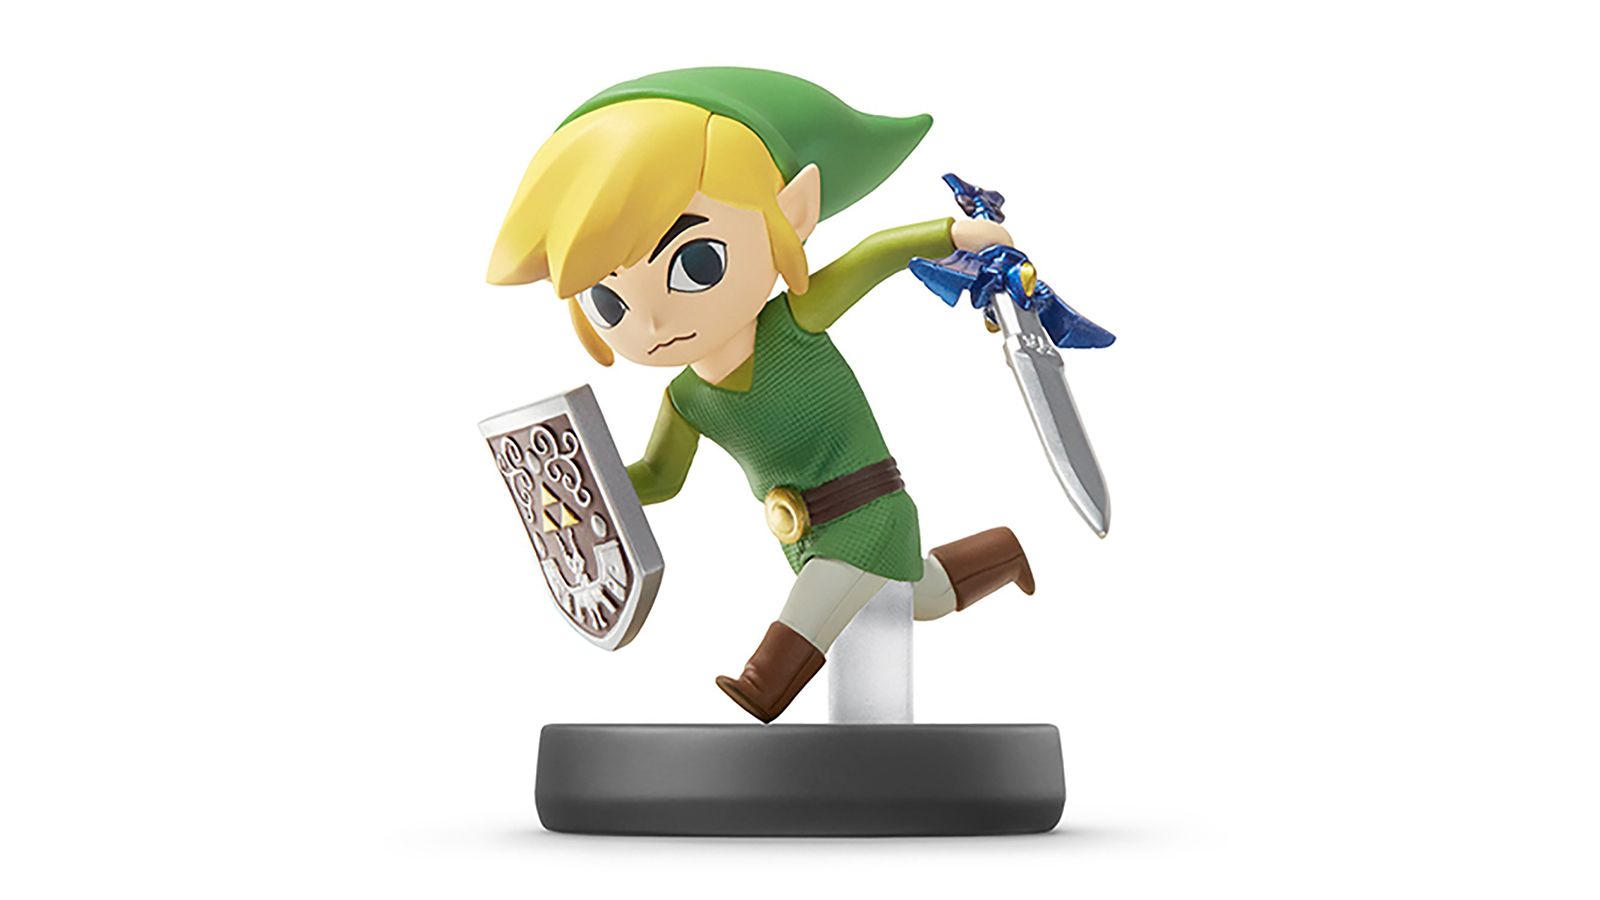 Nintendo amiibo The Legend of Zelda: Tears of the Kingdom - Link amiibo